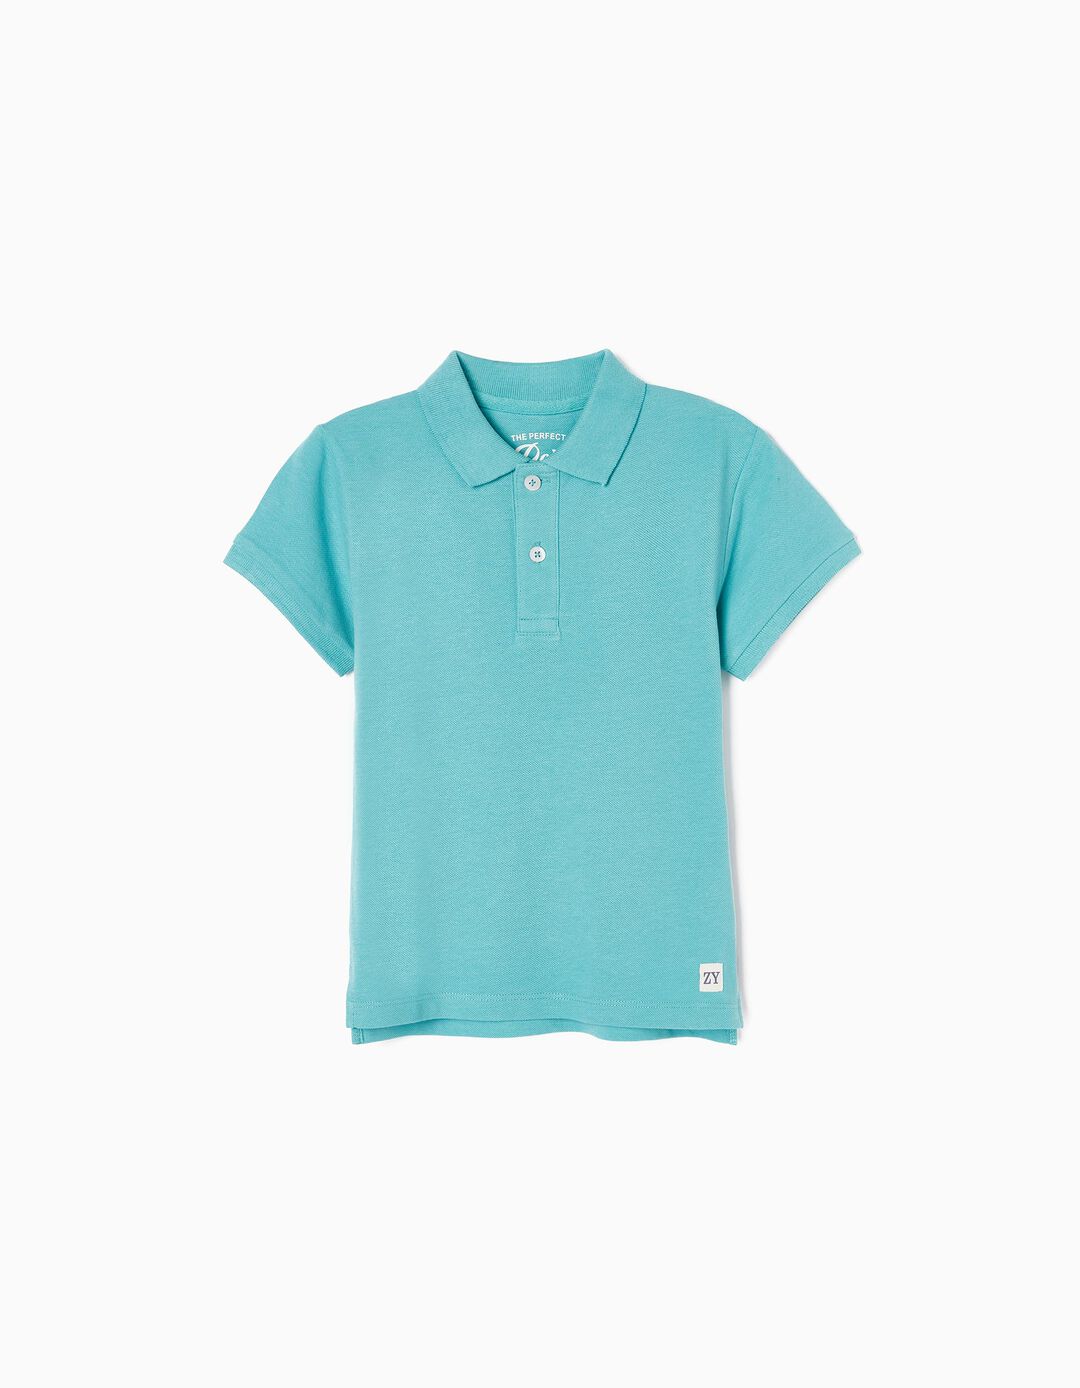 Cotton Polo Shirt for Boys, Blue